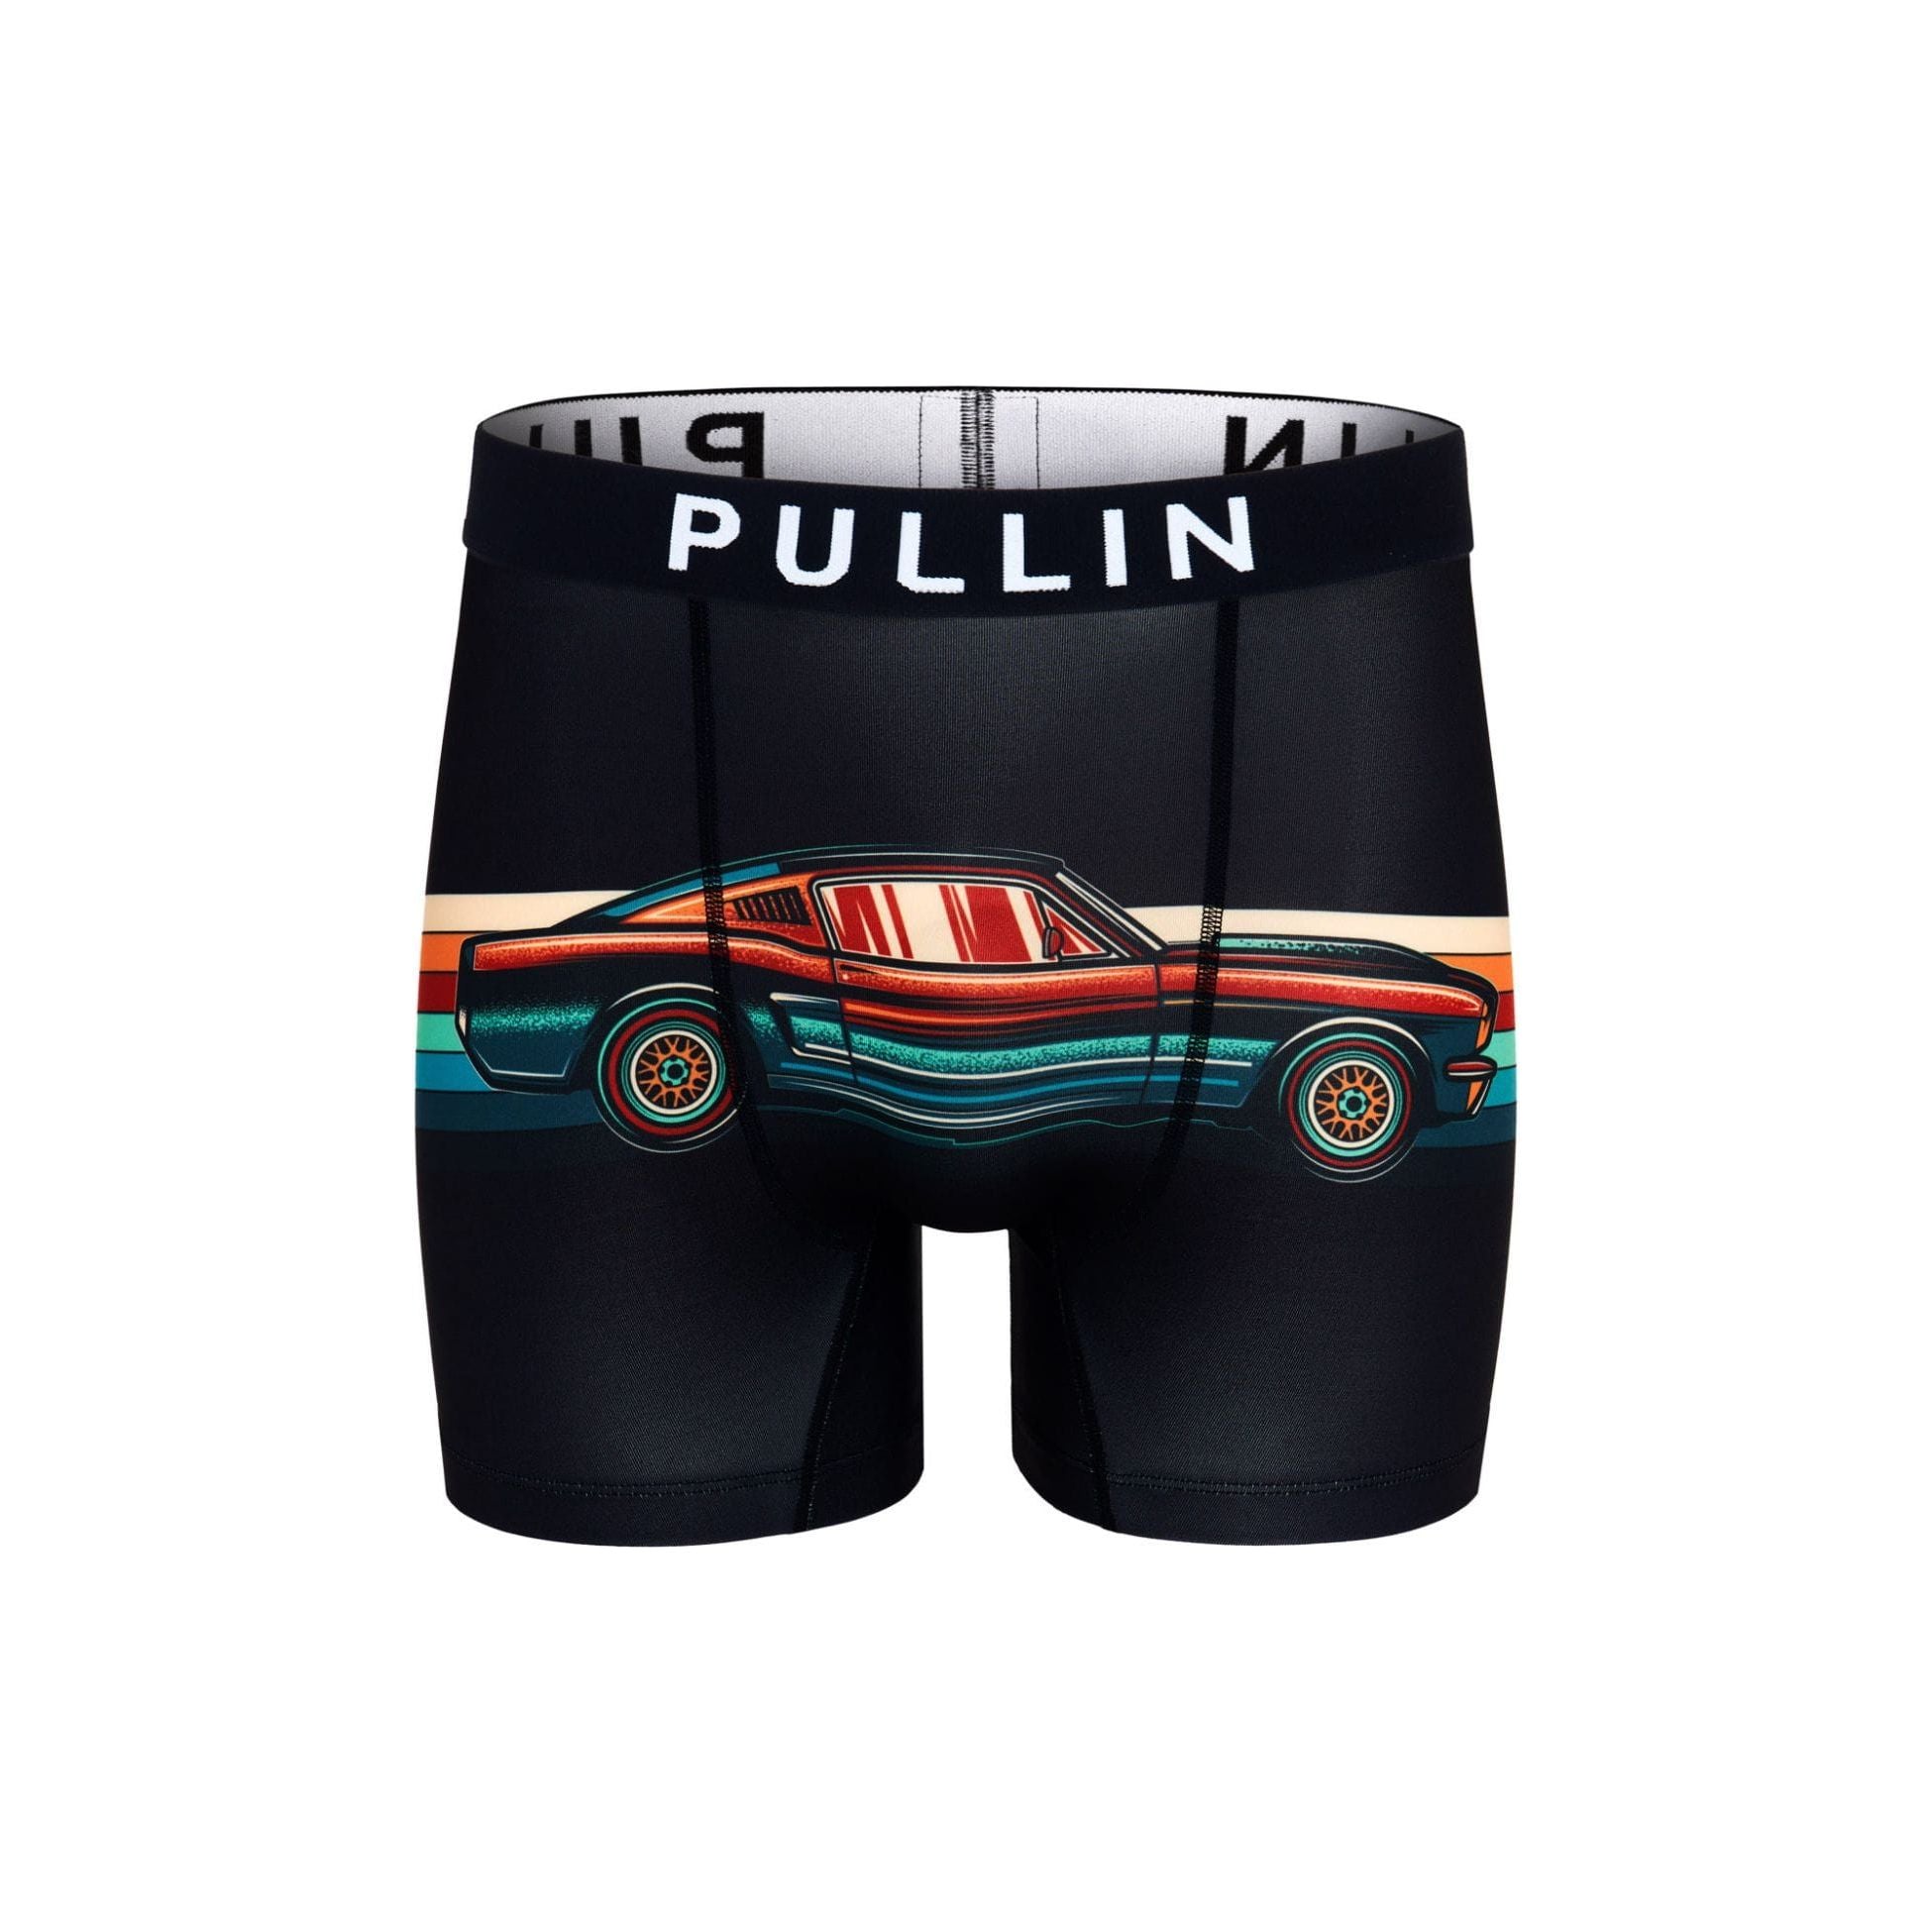 Boxer Pullin Fashion 2 Hippie for men - Soccer Sport Fitness